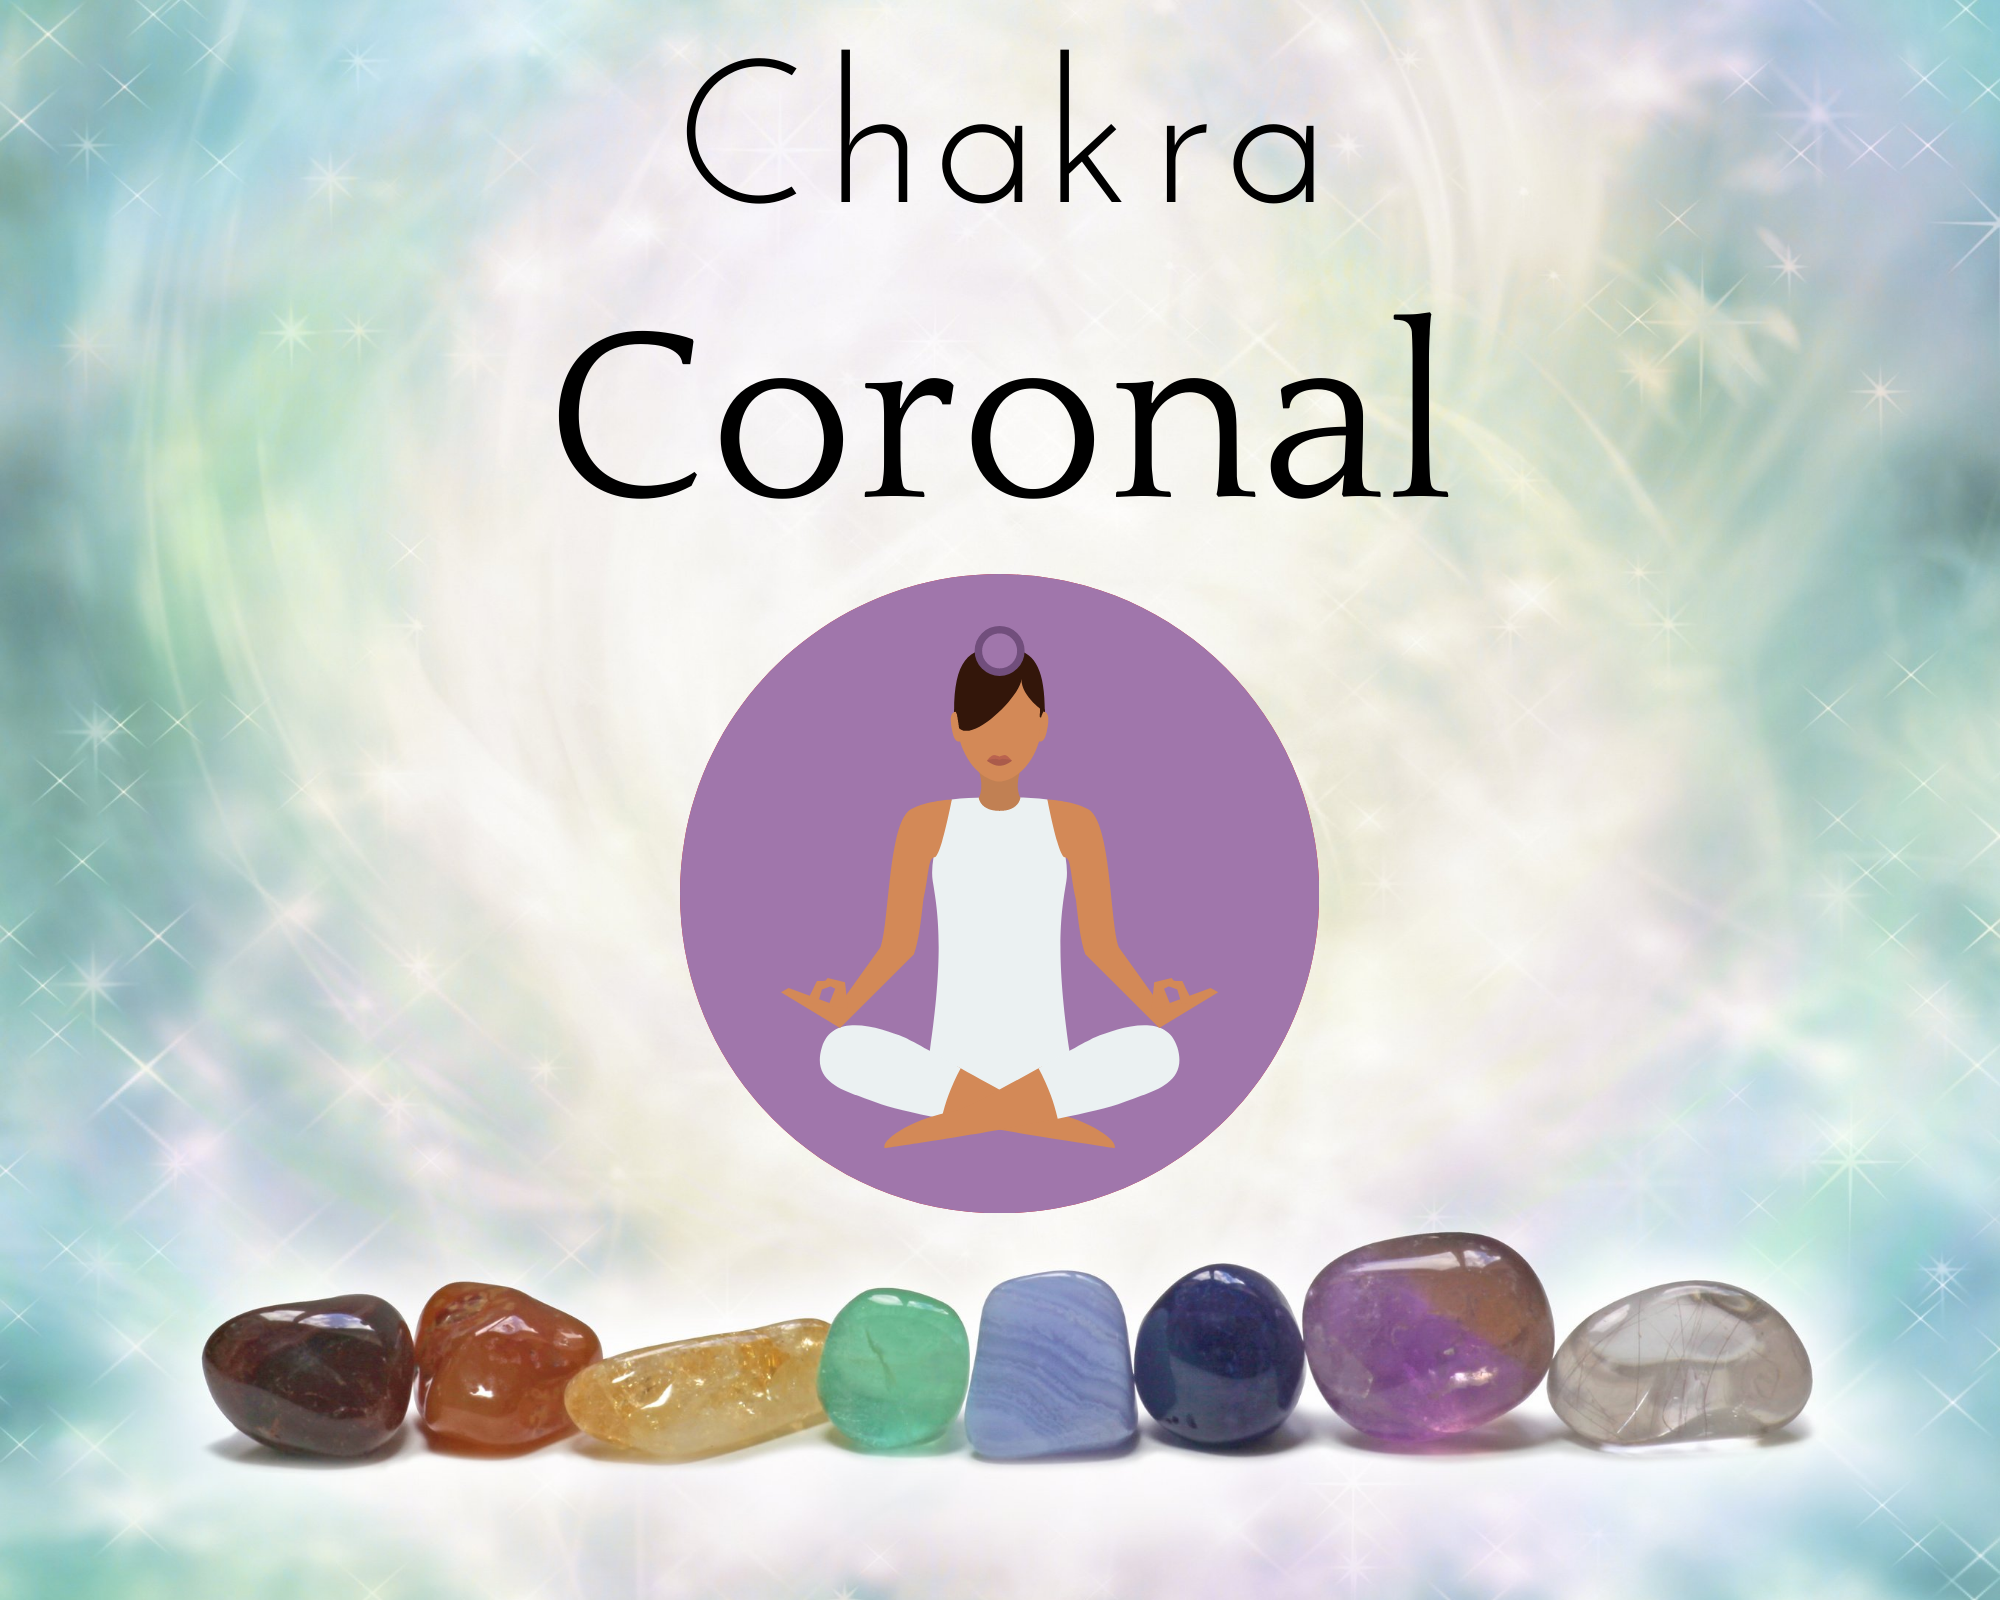 Le Chakra Coronal ou Sahasrara : dernier des sept chakras